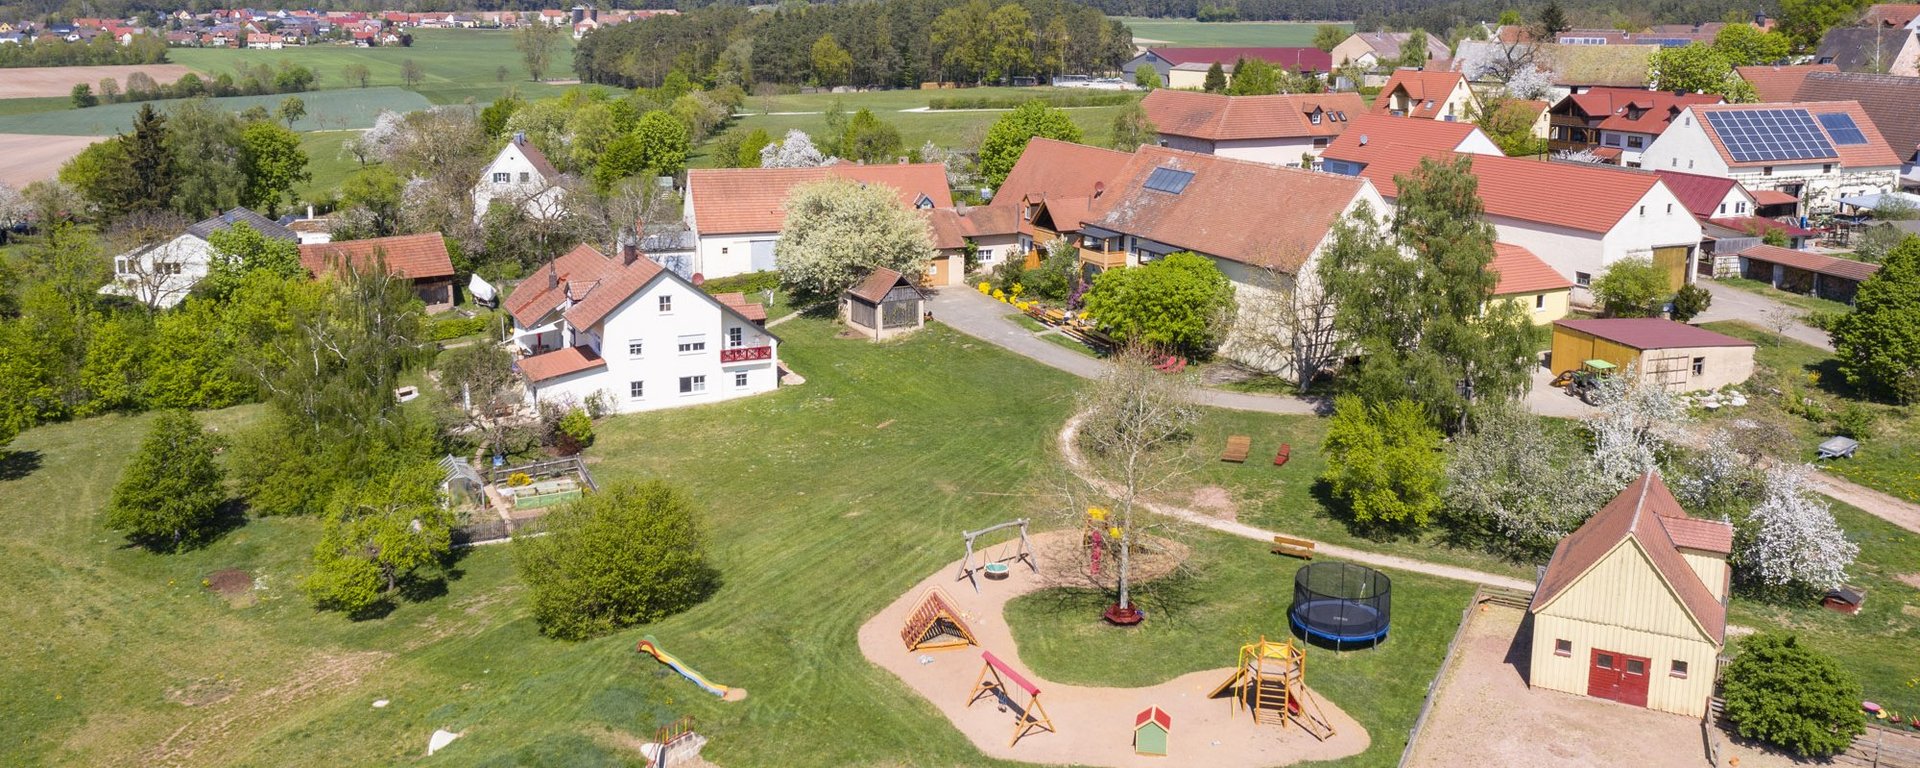 Hofansicht Luftaufnahme des Kinder-Ferienhof Burmann in Haundorf Romantisches Franken.